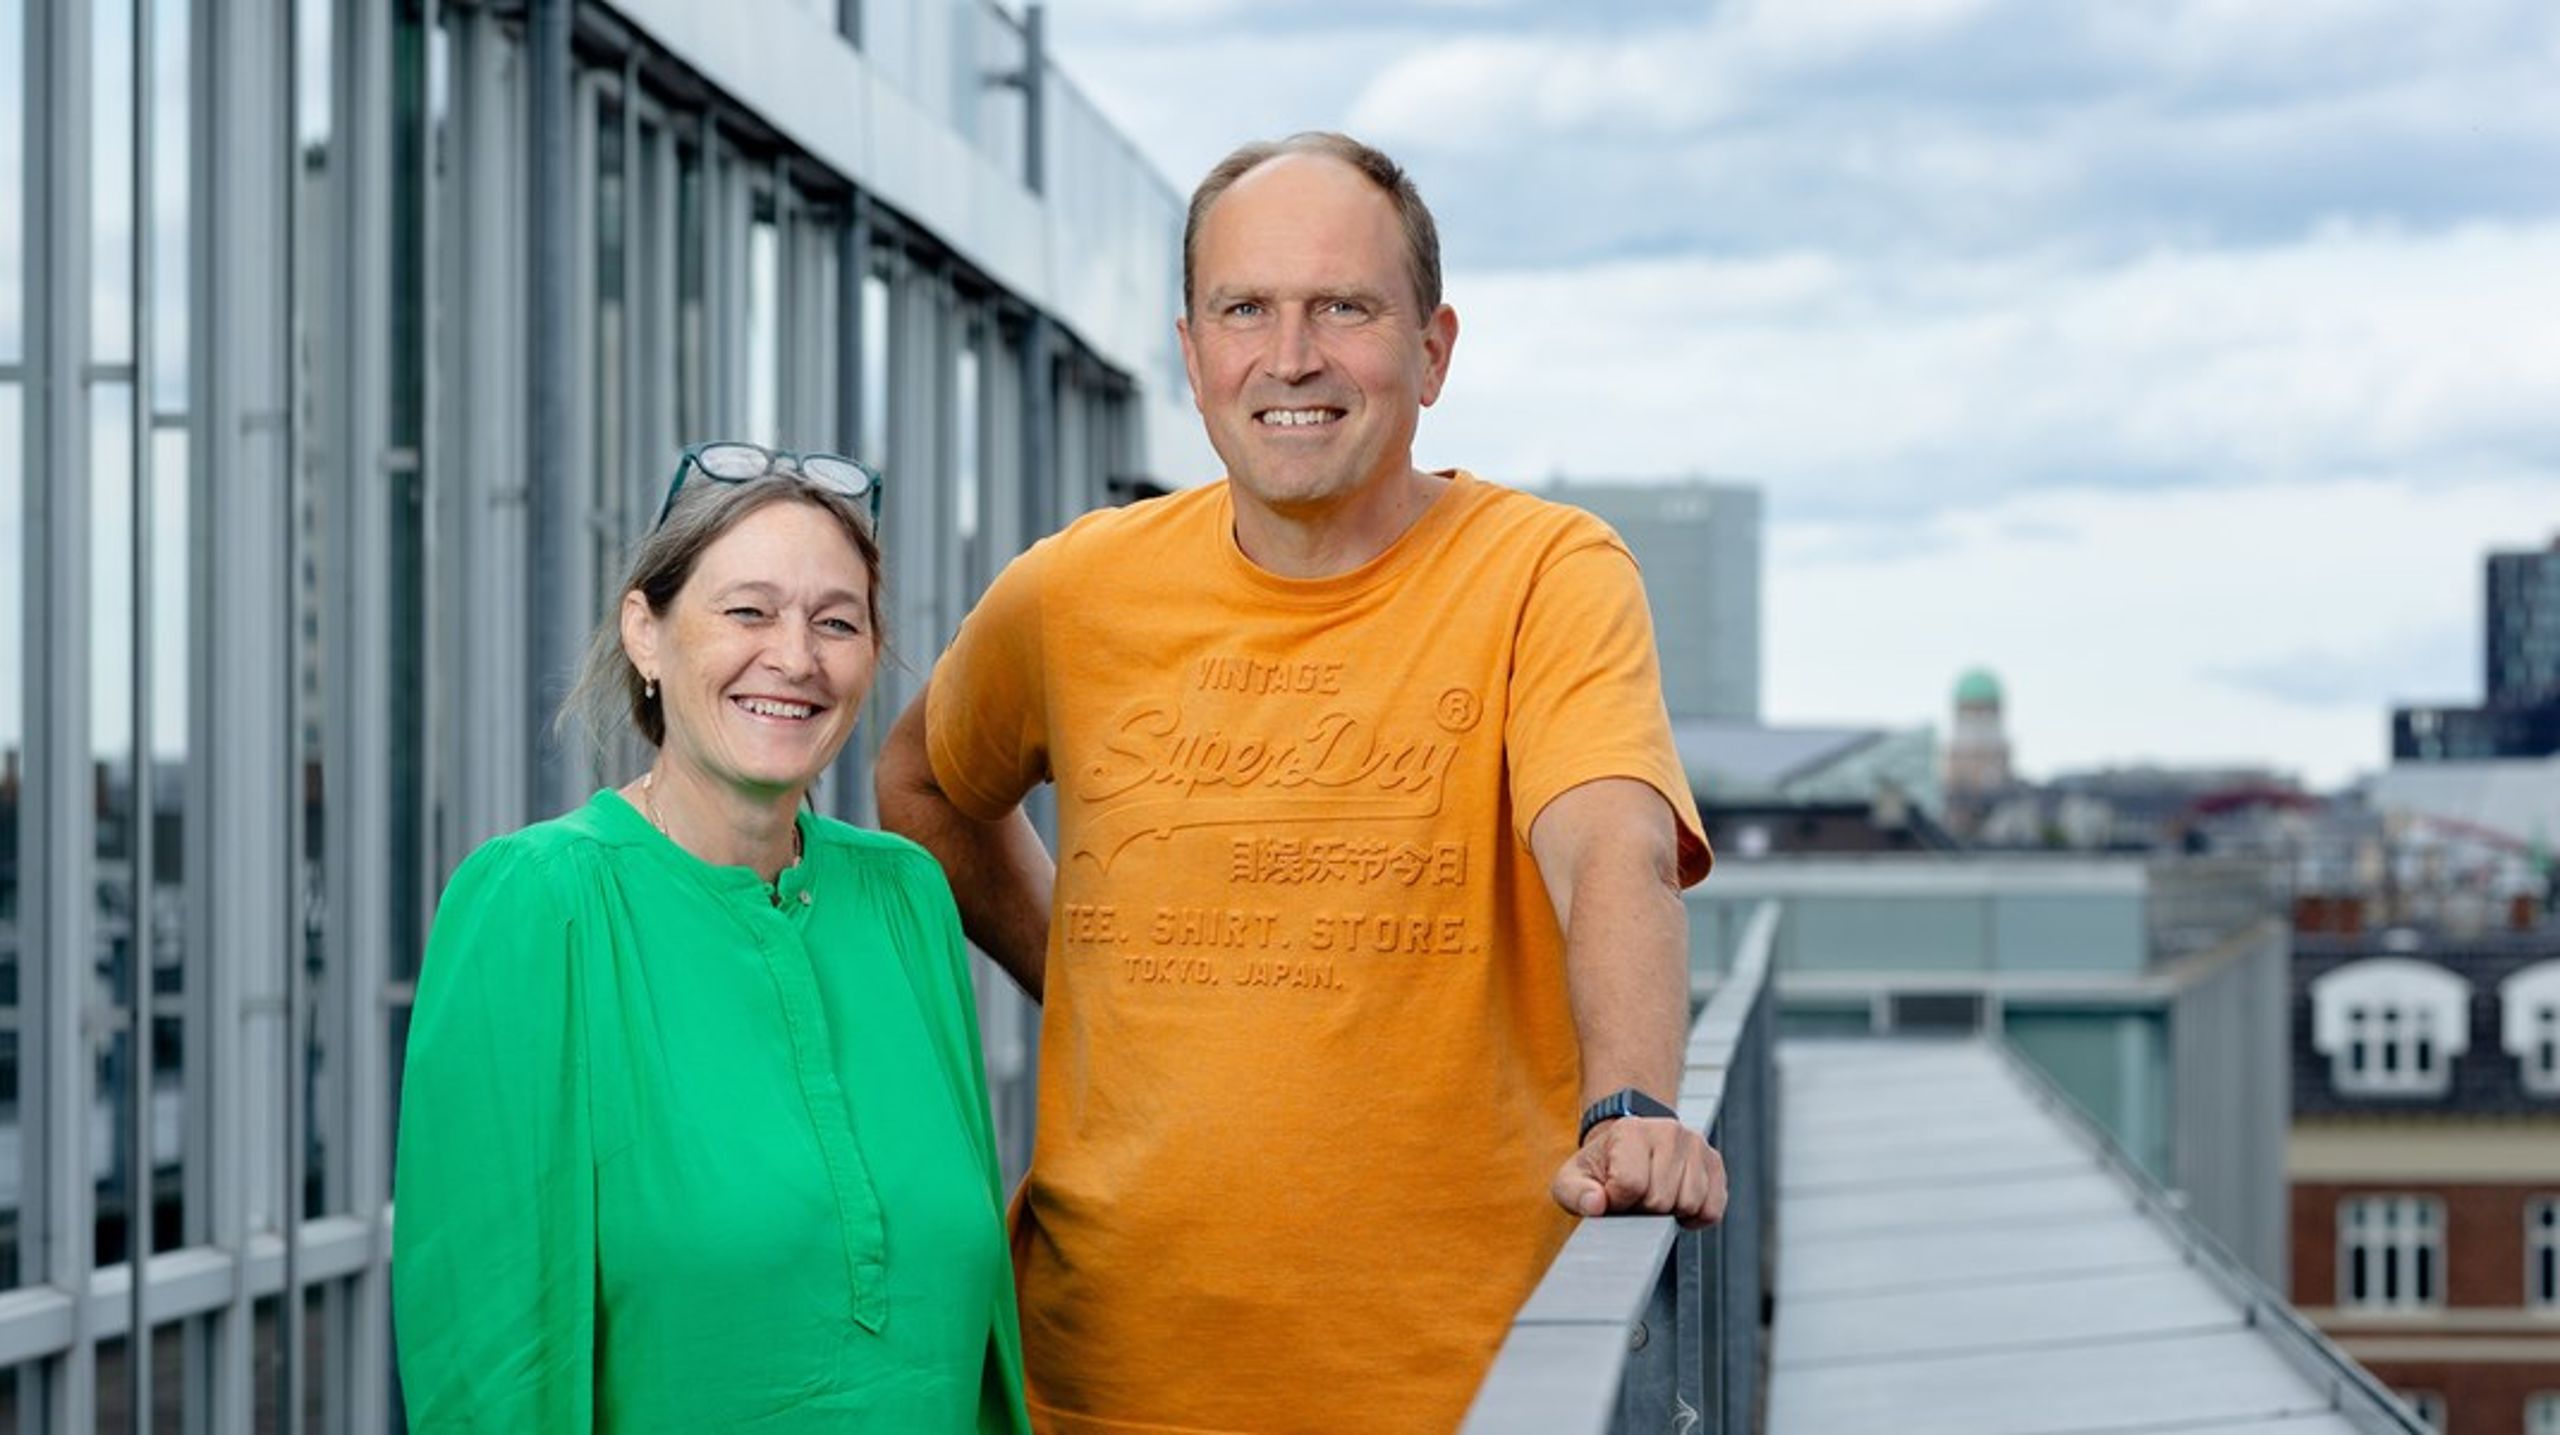 Komponent og Type2dialog har fusioneret. På billedet ses direktør i Komponent, Jonatan Schloss, og Helene Hoffmann, der er stifter af Type2dialog.&nbsp;